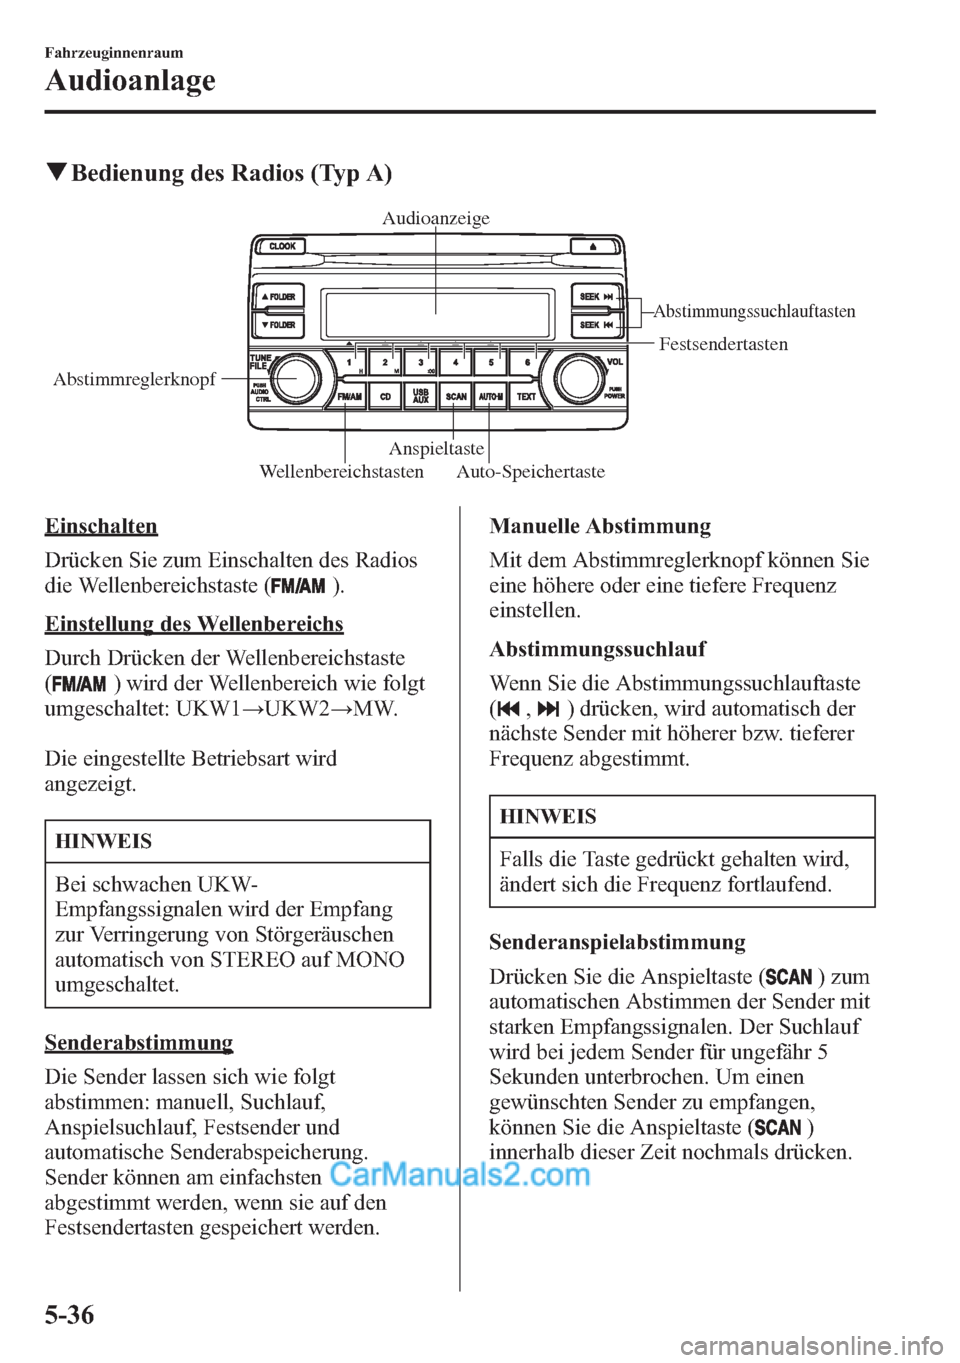 MAZDA MODEL CX-5 2015  Betriebsanleitung (in German) qBedienung des Radios (Typ A)
WellenbereichstastenAnspieltaste
Abstimmungssuchlauftasten
Festsendertasten
Auto-Speichertaste AbstimmreglerknopfAudioanzeige
Einschalten
Drücken Sie zum Einschalten des